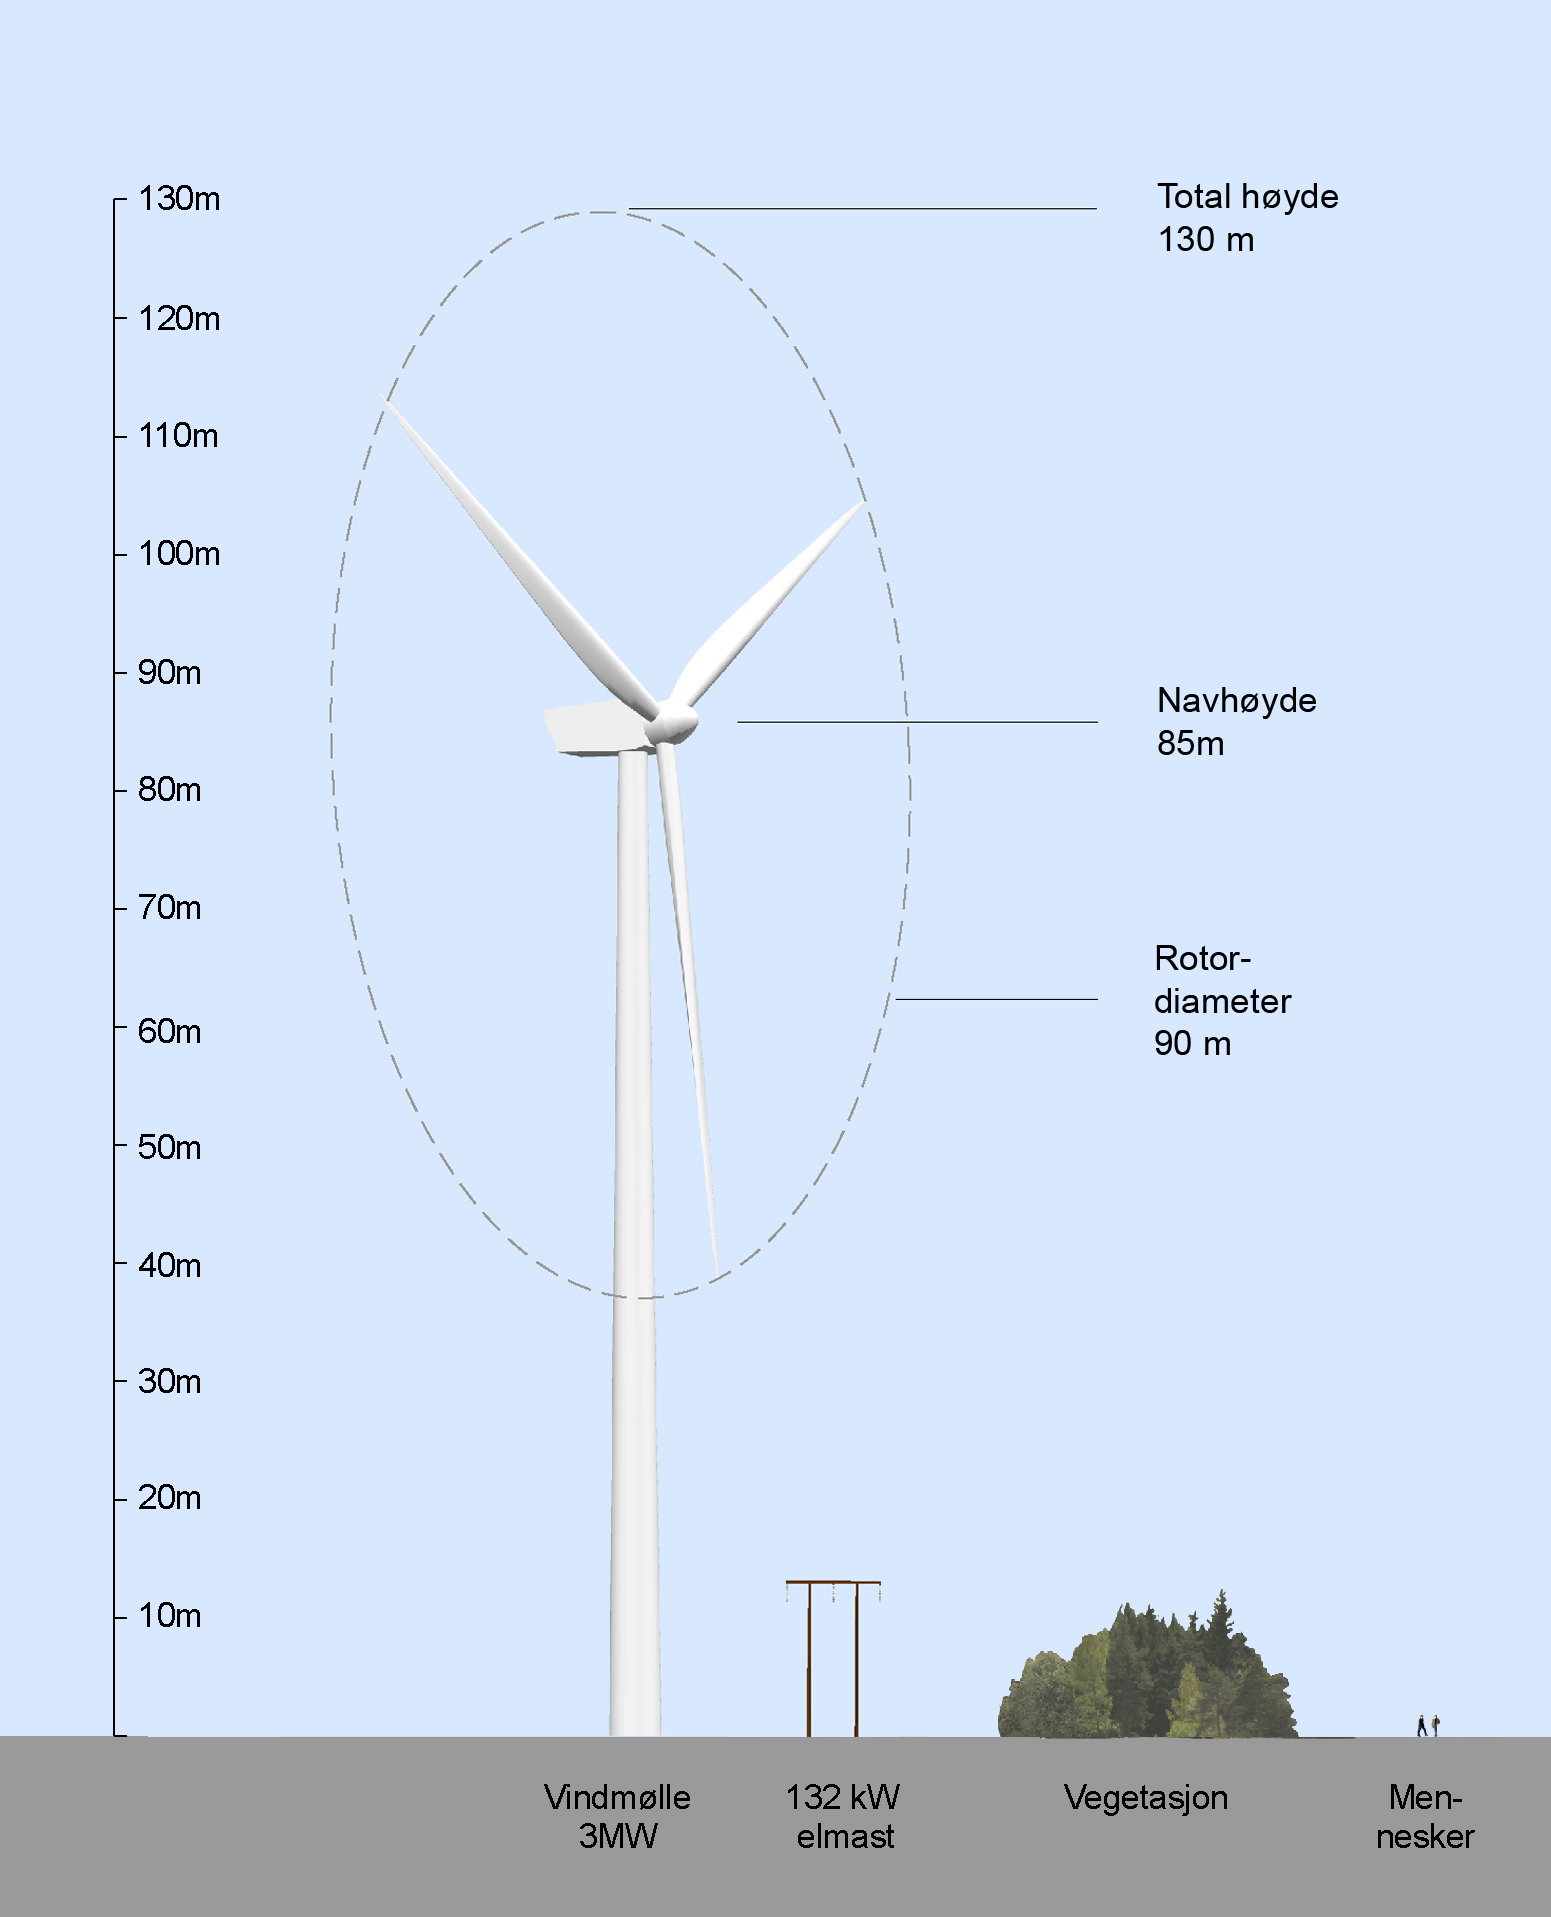 Figur 4.3: Skisse som viser dimensjonene på en 3-MW vindturbin som er brukt i vurderingene, sammenlignet med en 132k